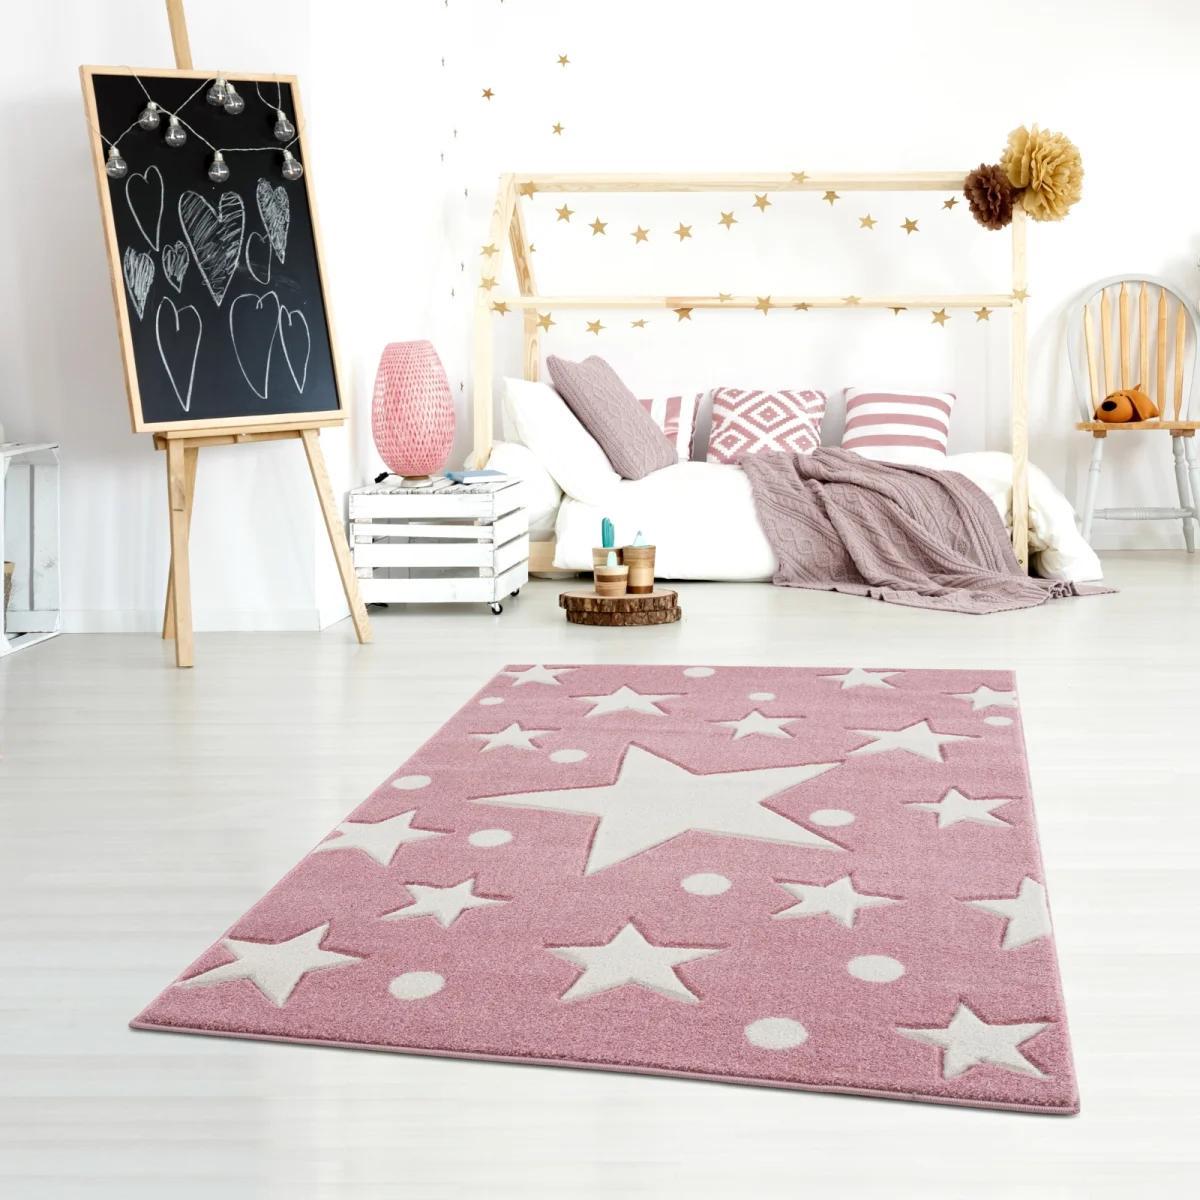 Dywan dziecięcy Estrella Pink 100x160 cm do pokoju dziecięcego różowy w gwiazdy nr. 1